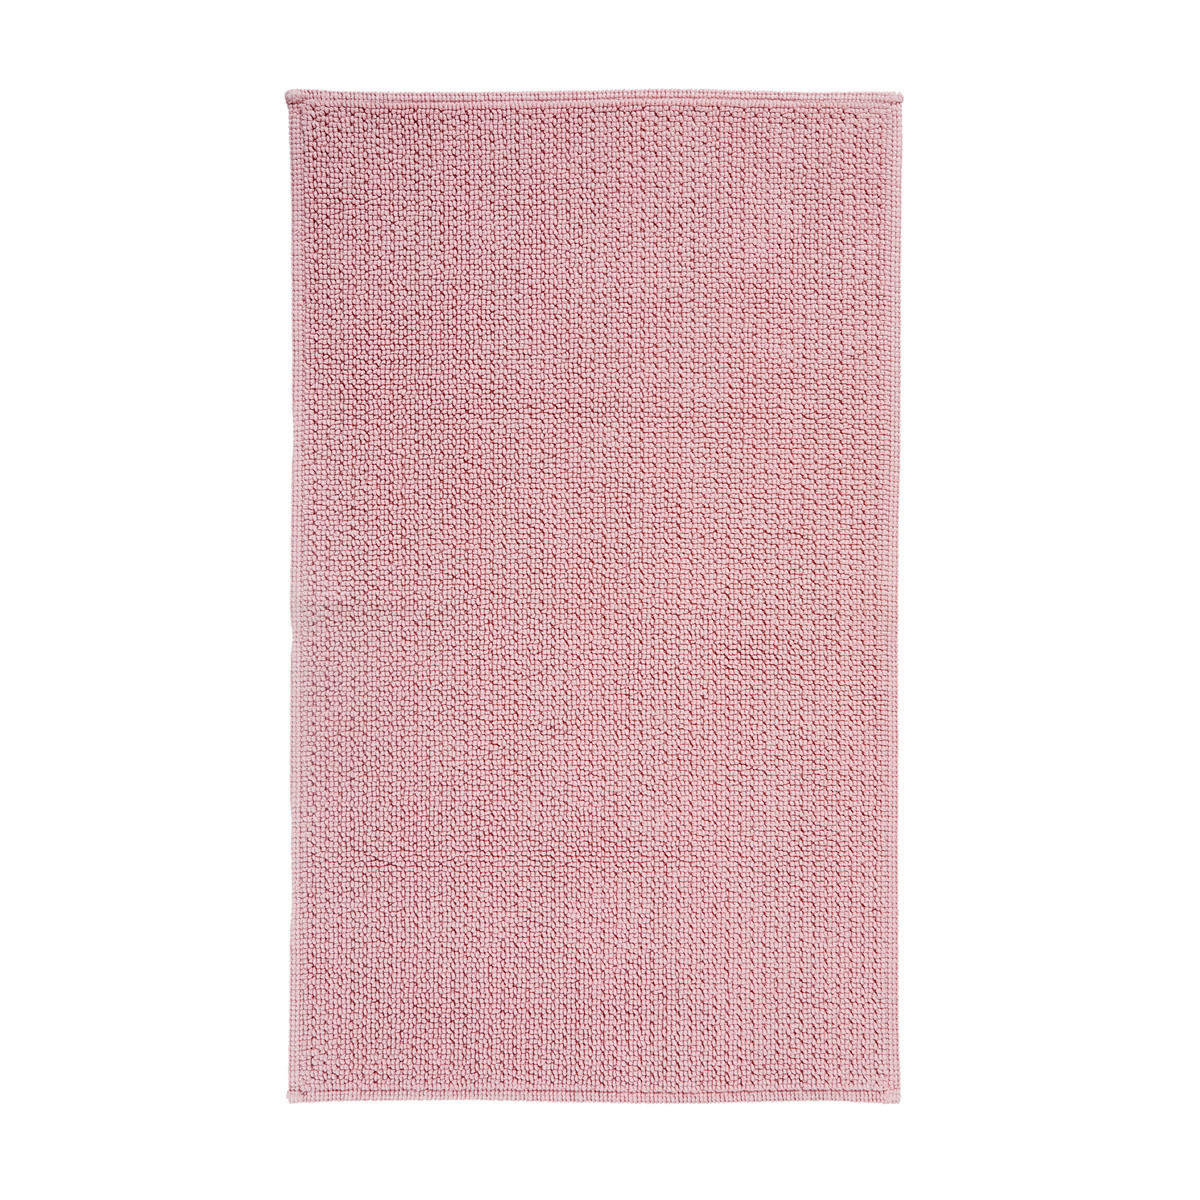 BADEMATTE PER 60/100 cm  - Pink, Basics, Textil (60/100cm) - Aquanova